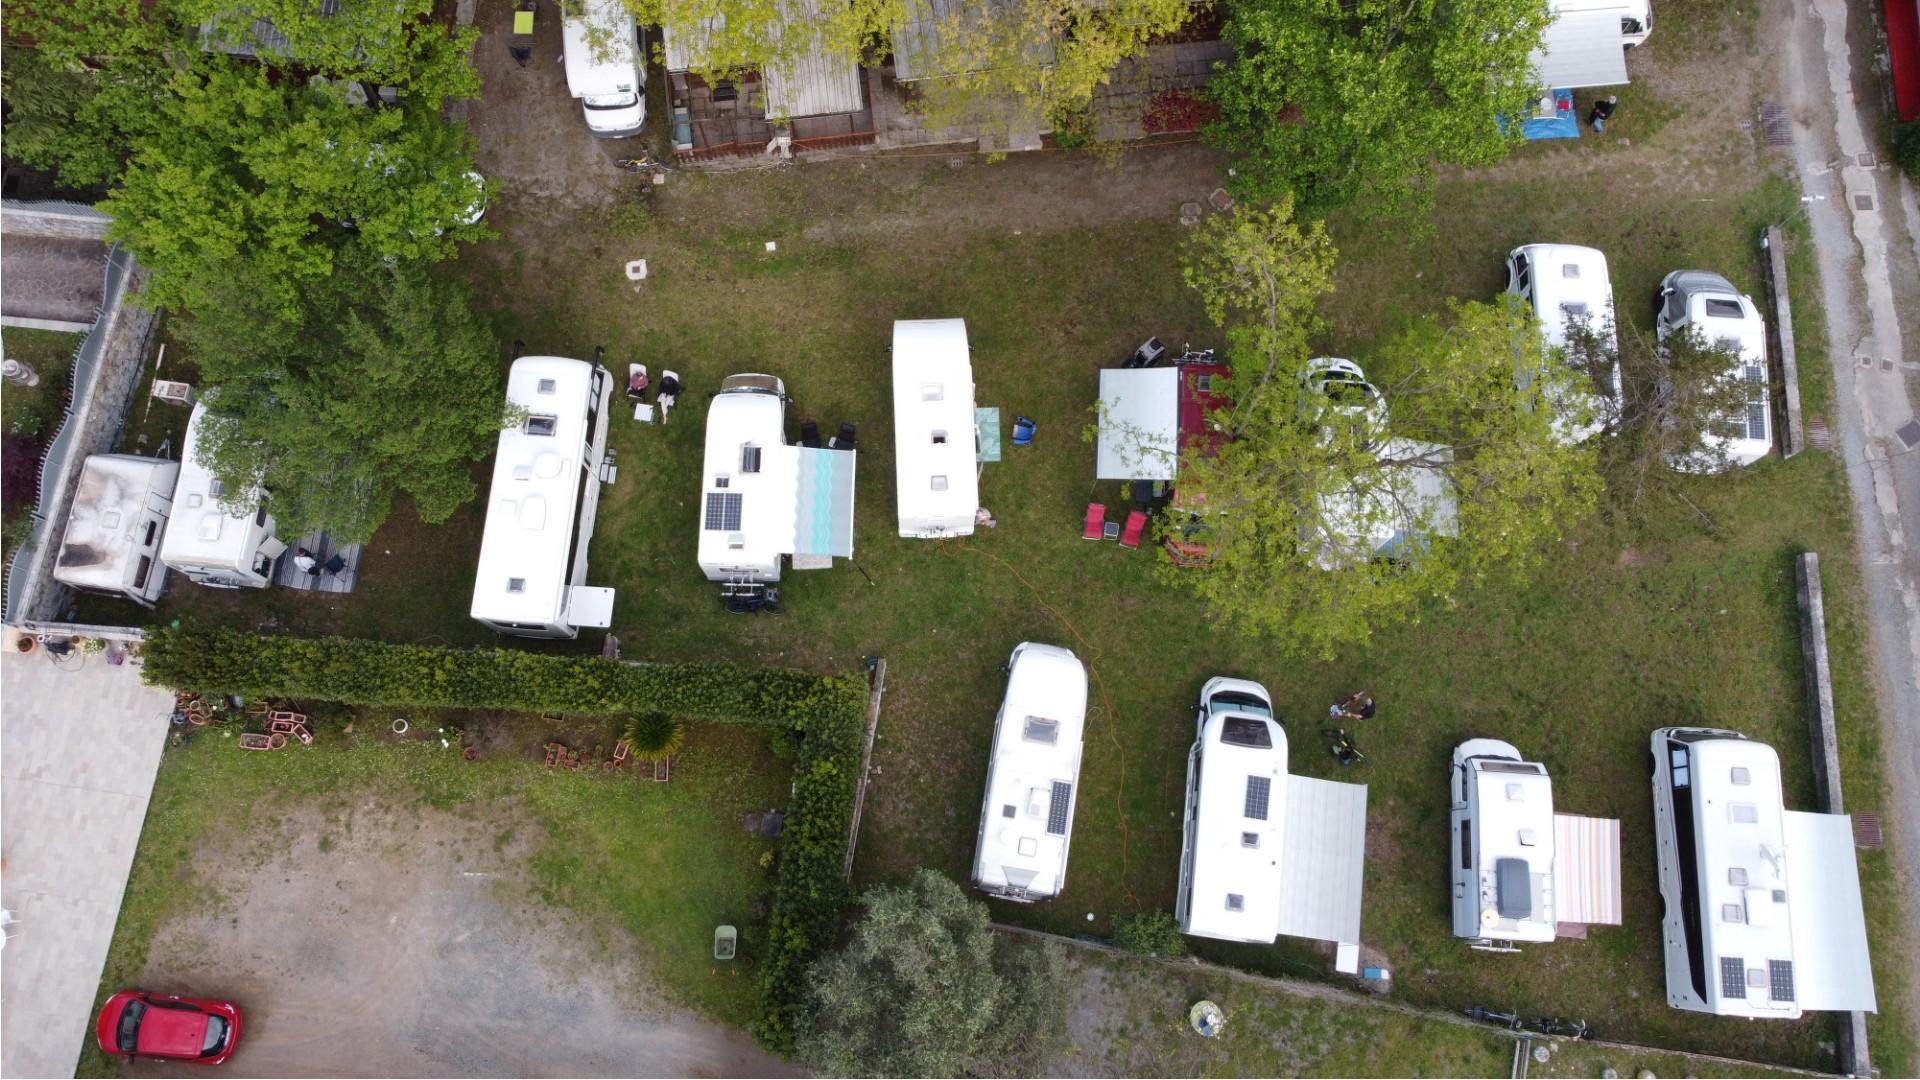 Luftaufnahme eines Campingplatzes mit geparkten Wohnmobilen und Wohnwagen.